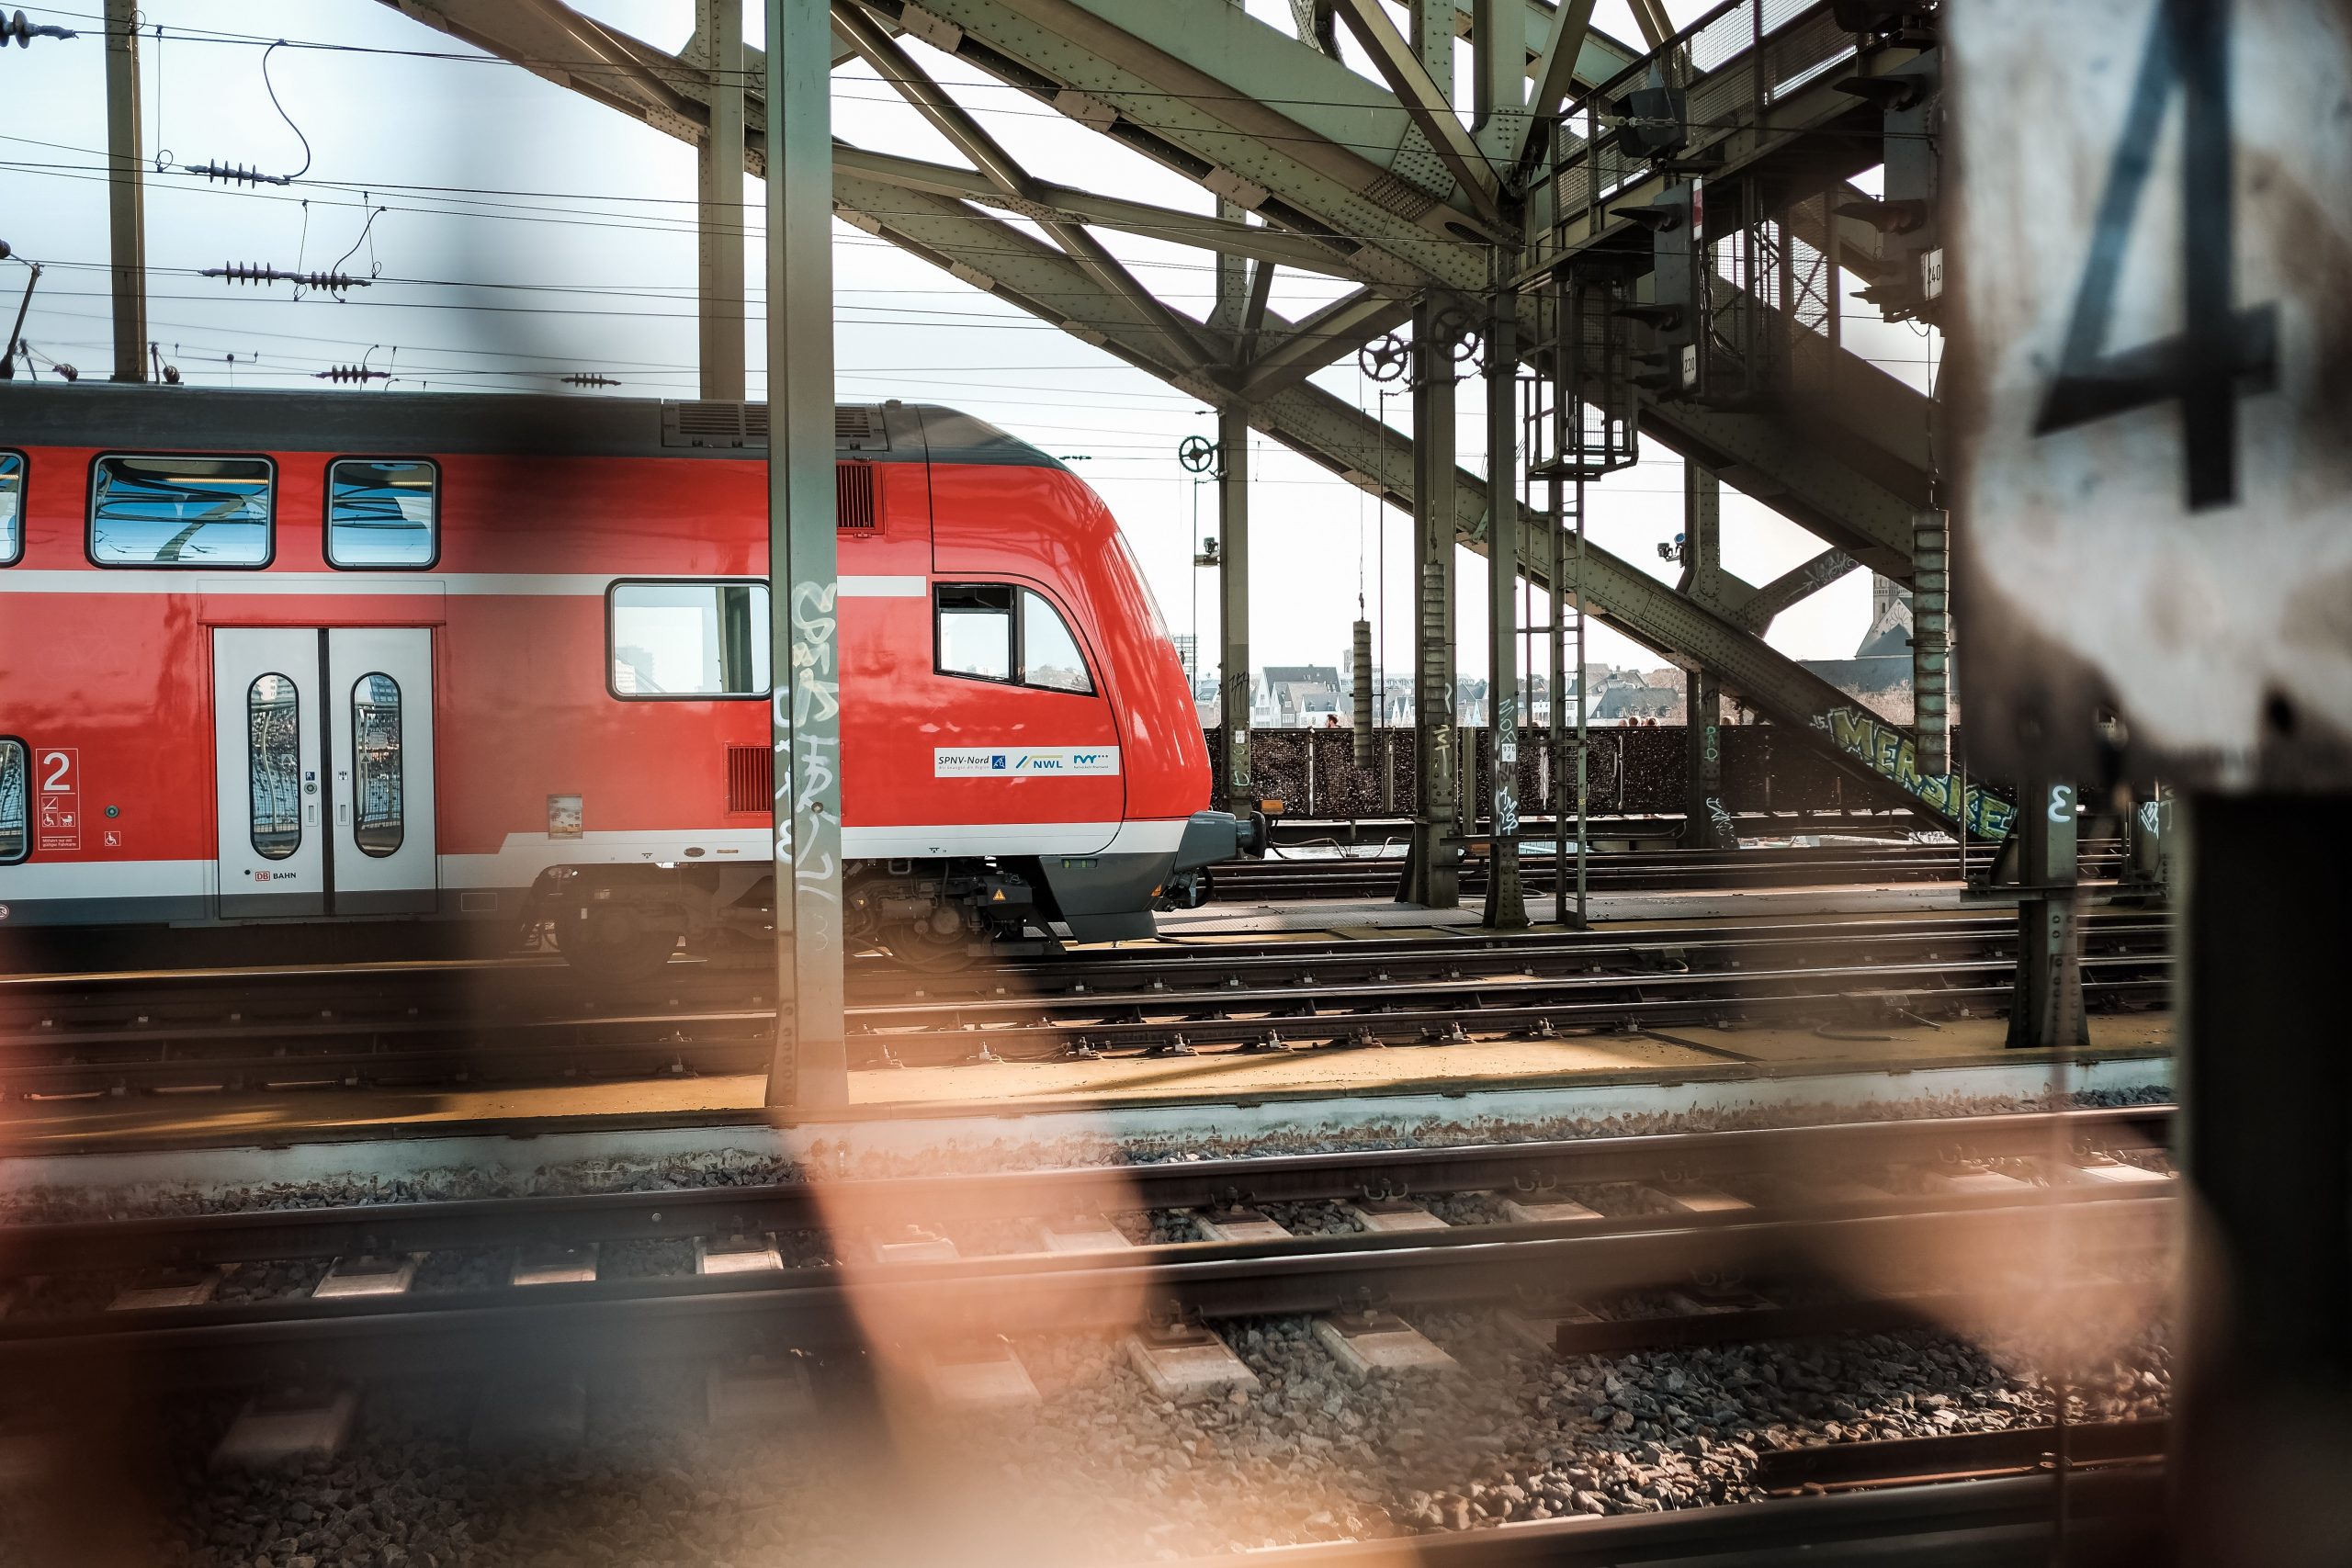 Bild: Jonas Junk, red and white train on train station, CC0, via unsplash.com (keine Änderungen vorgenommen)